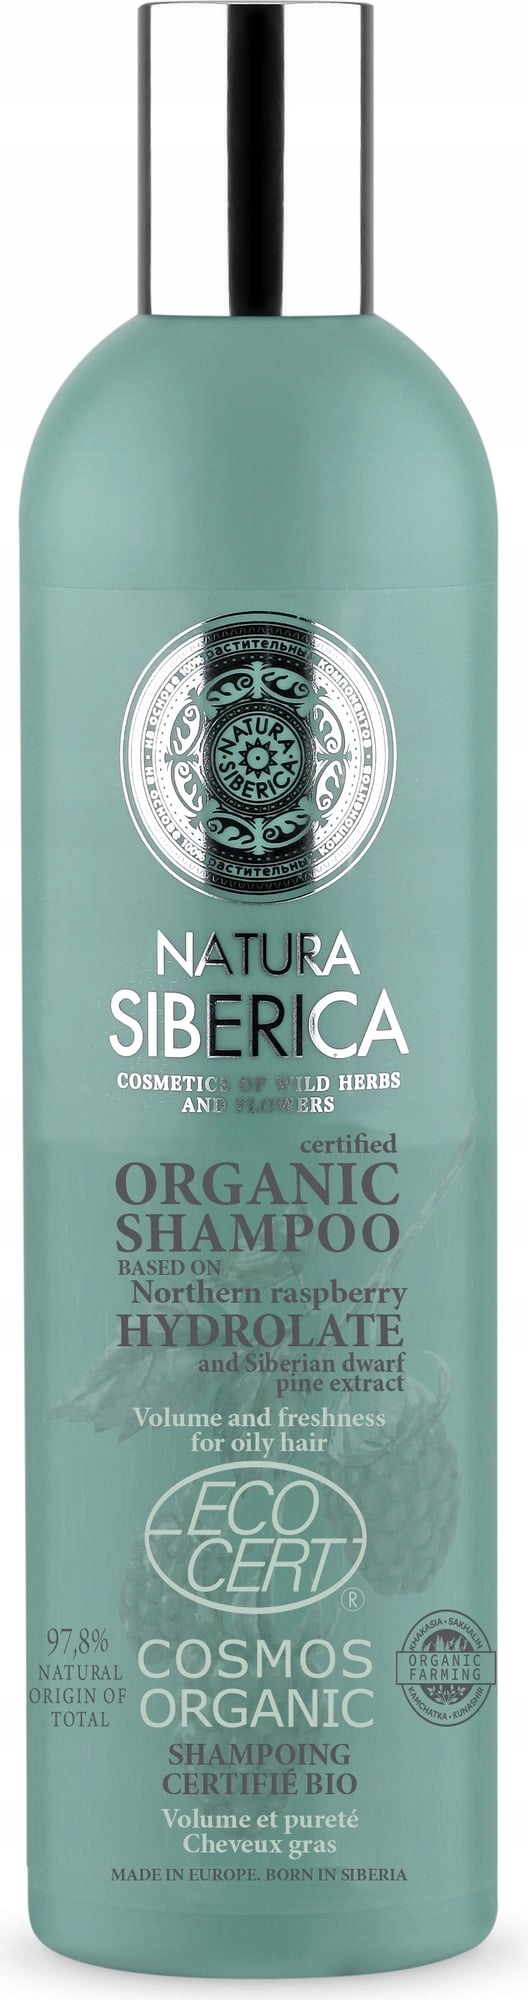 natura siberica szampon objętość